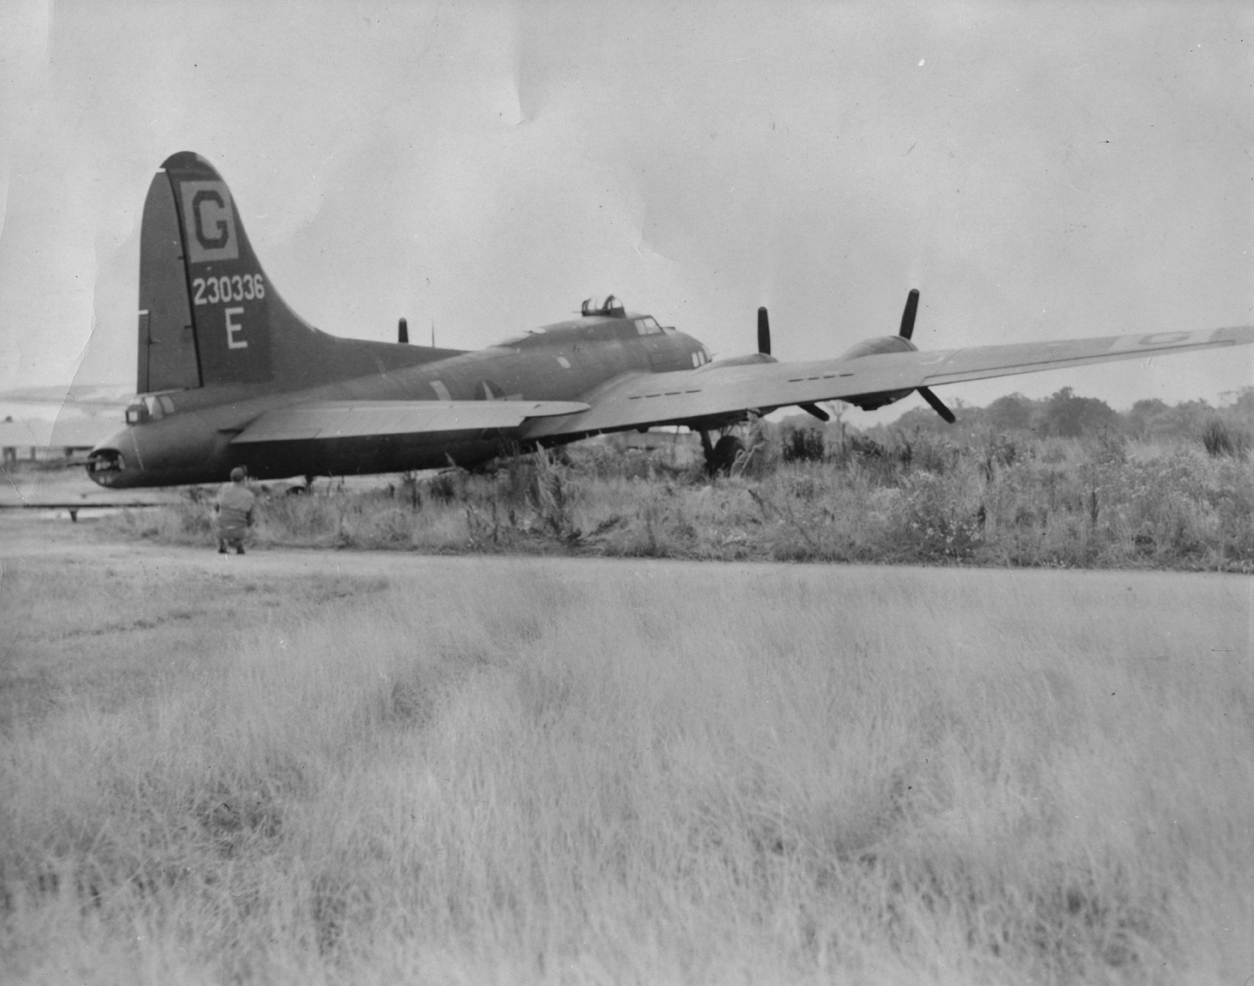 B-17 42-30336